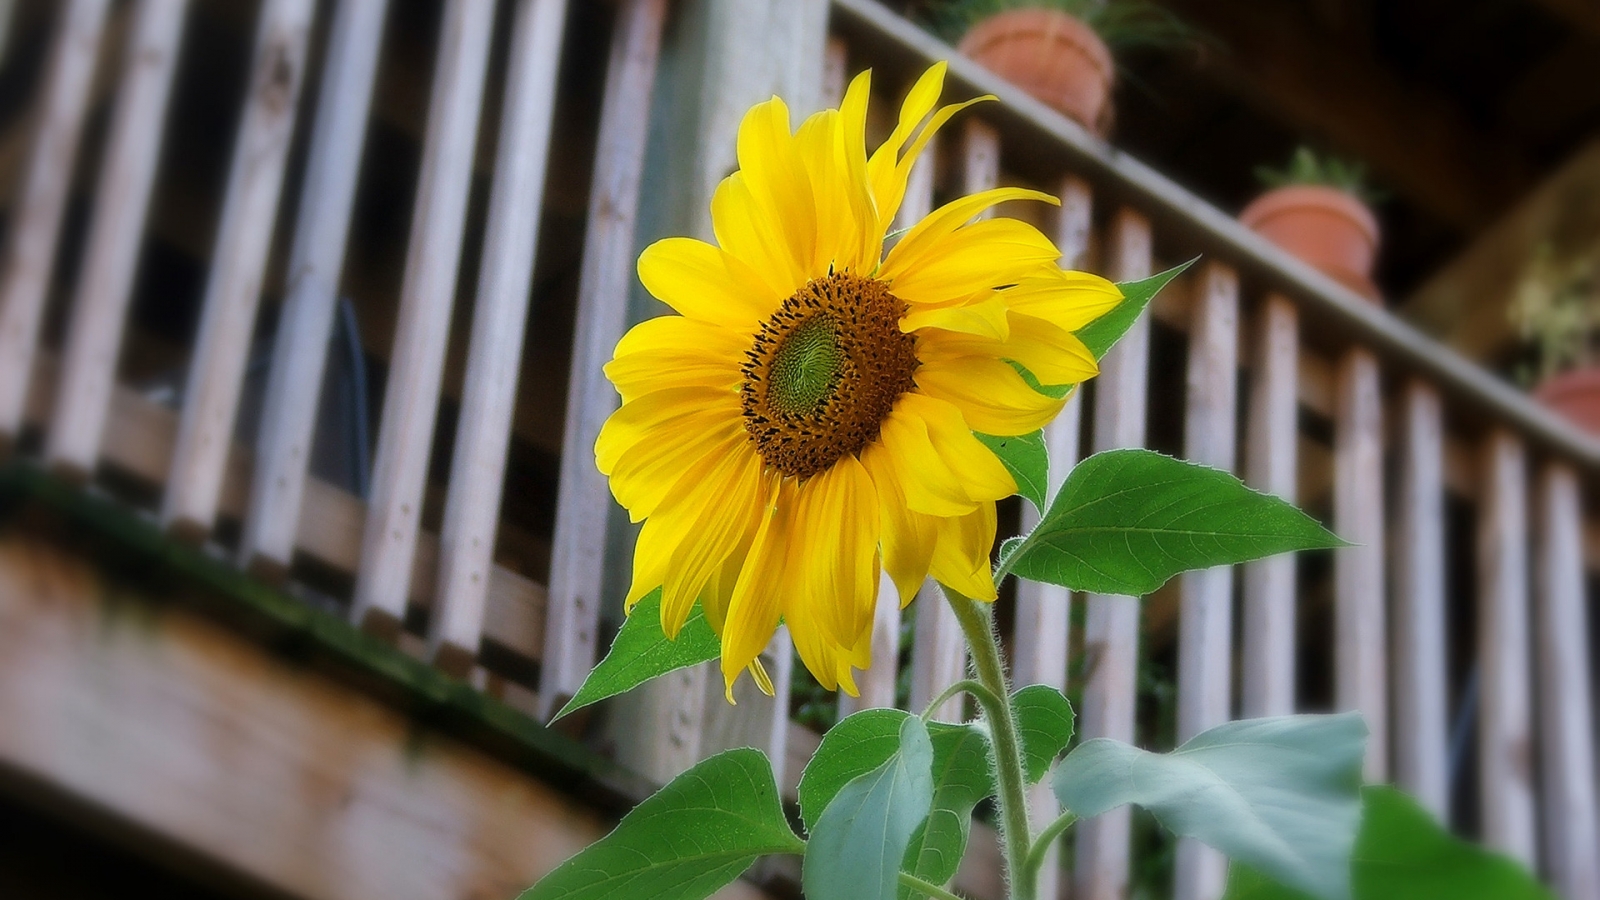 Sunflower for 1600 x 900 HDTV resolution